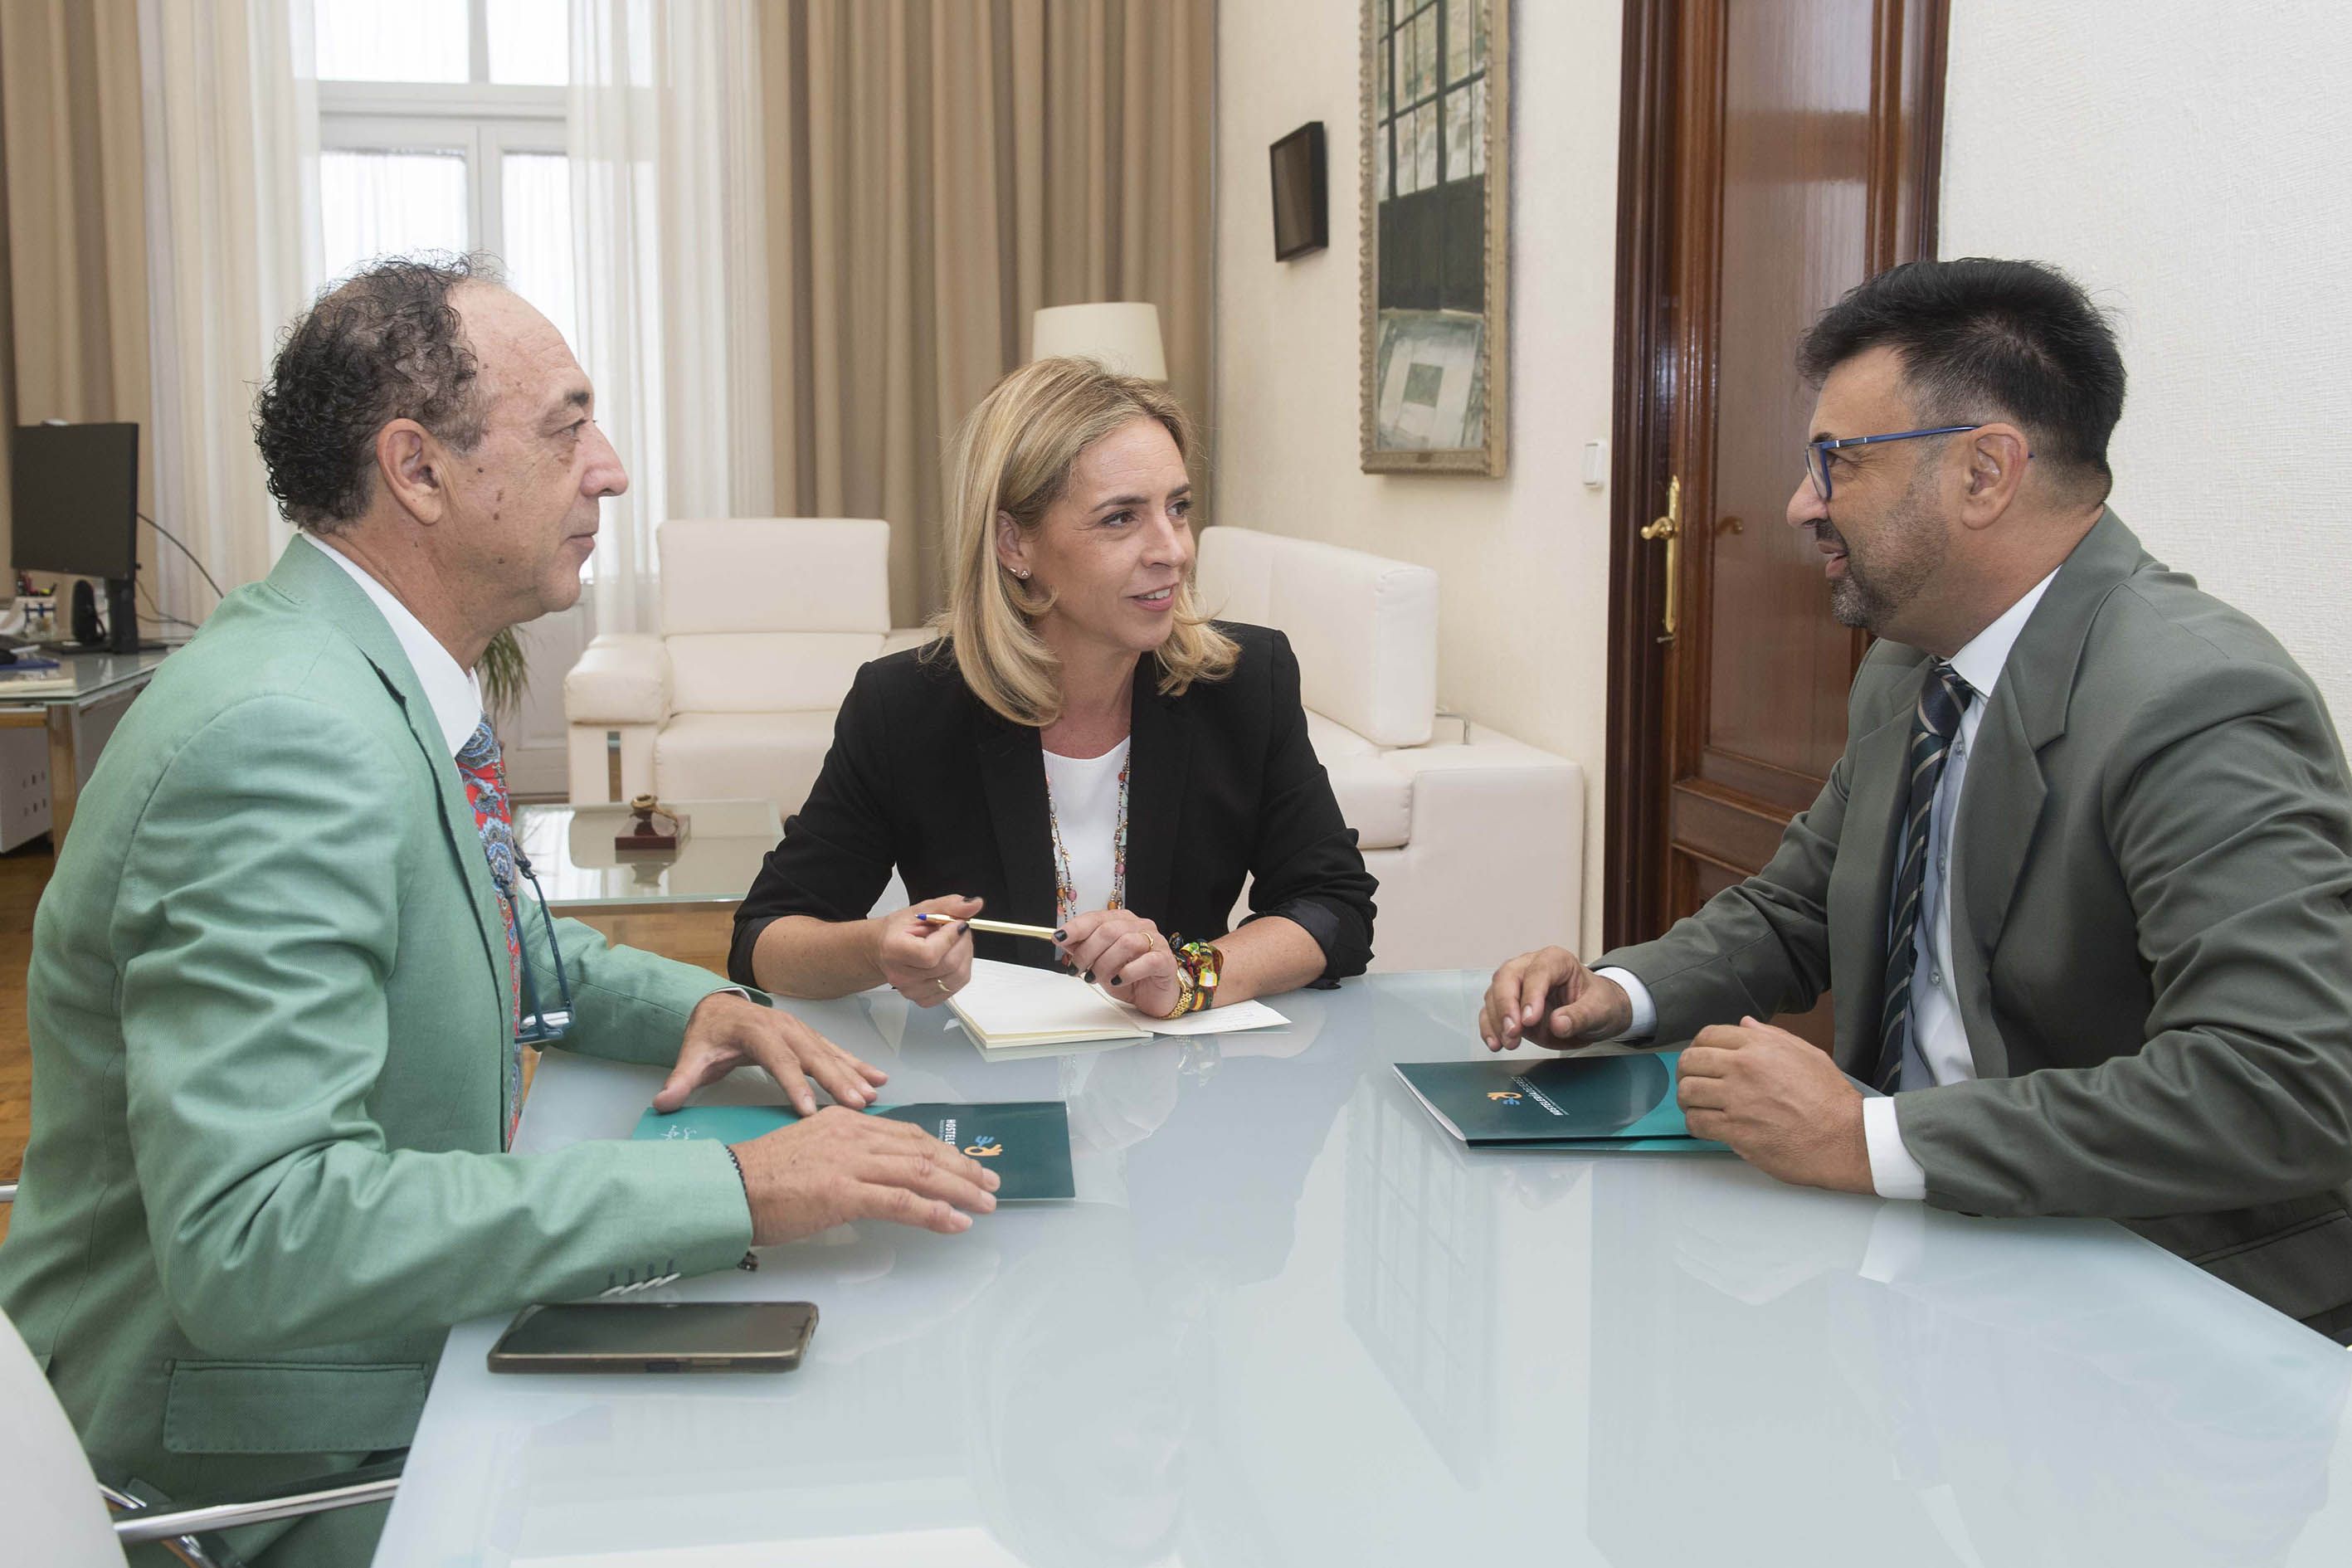 La Asociación de Hostelería de Jerez recibe el apoyo de Diputación a favor del turismo gastronómico. En la imagen, Almudena Martinez reunida con Alfredo Carrasco y Manuel Giron.